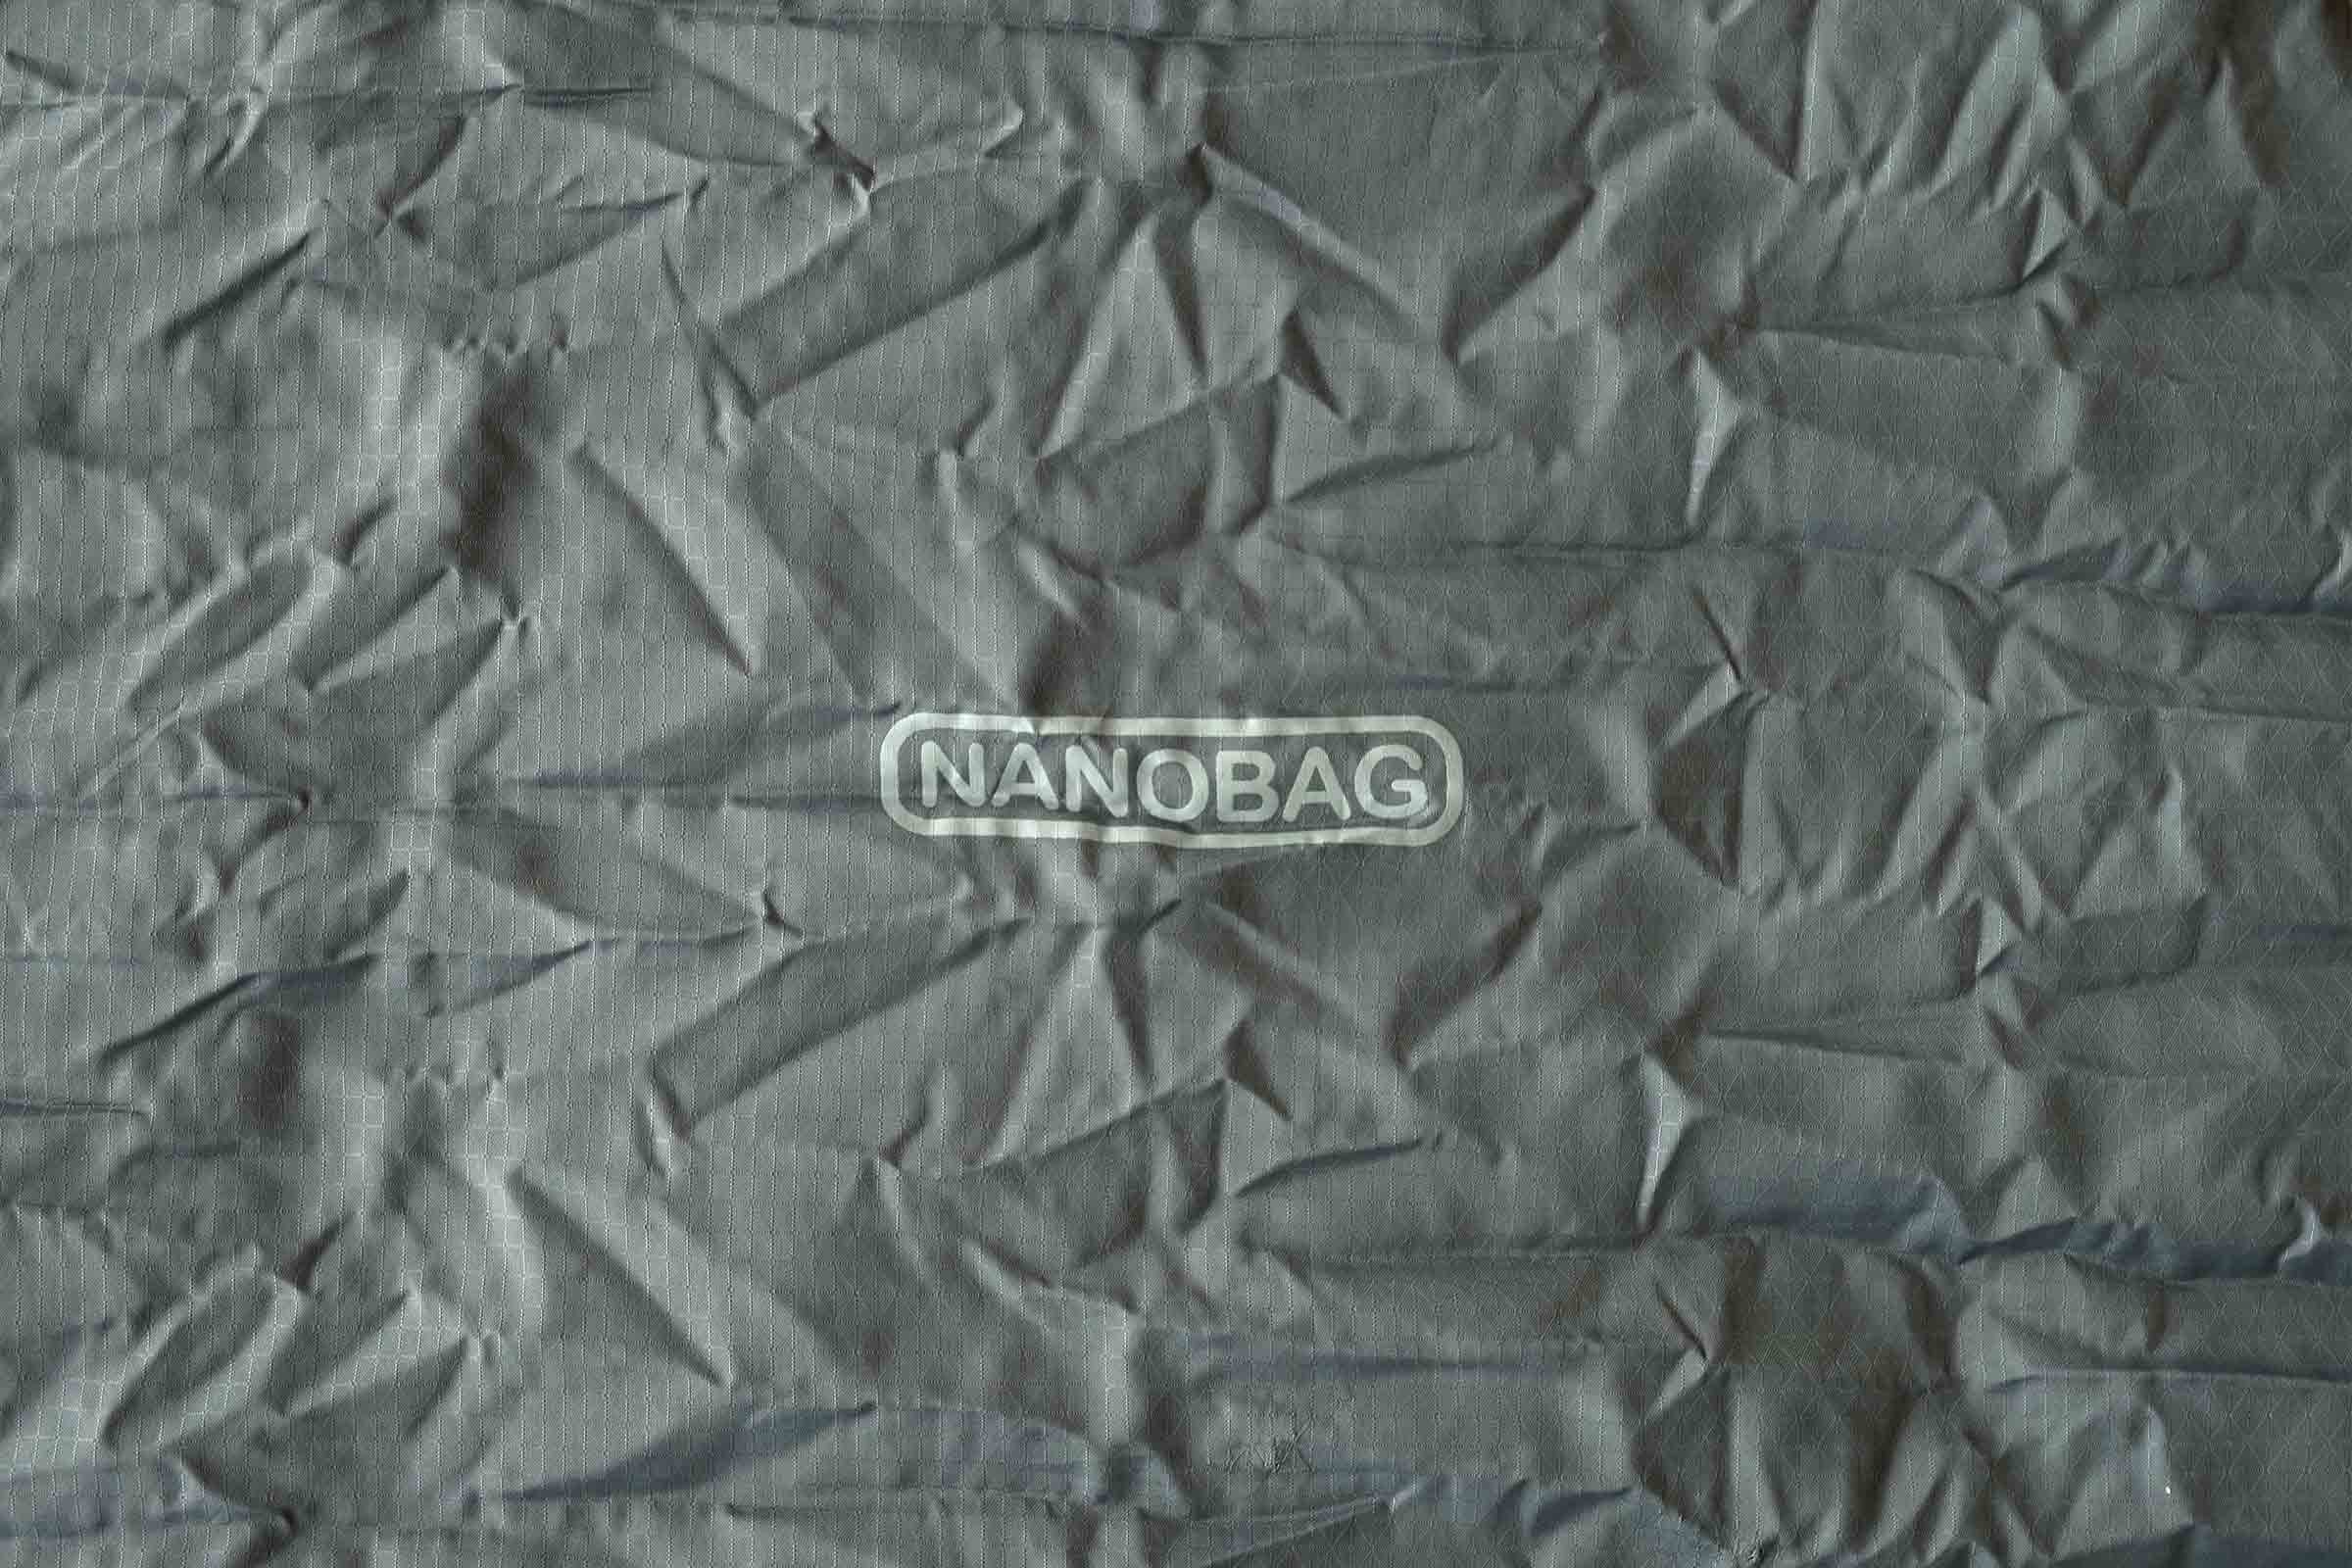 エコバッグ,nano bag,小さい,コンパクト,軽い,お洒落,安い